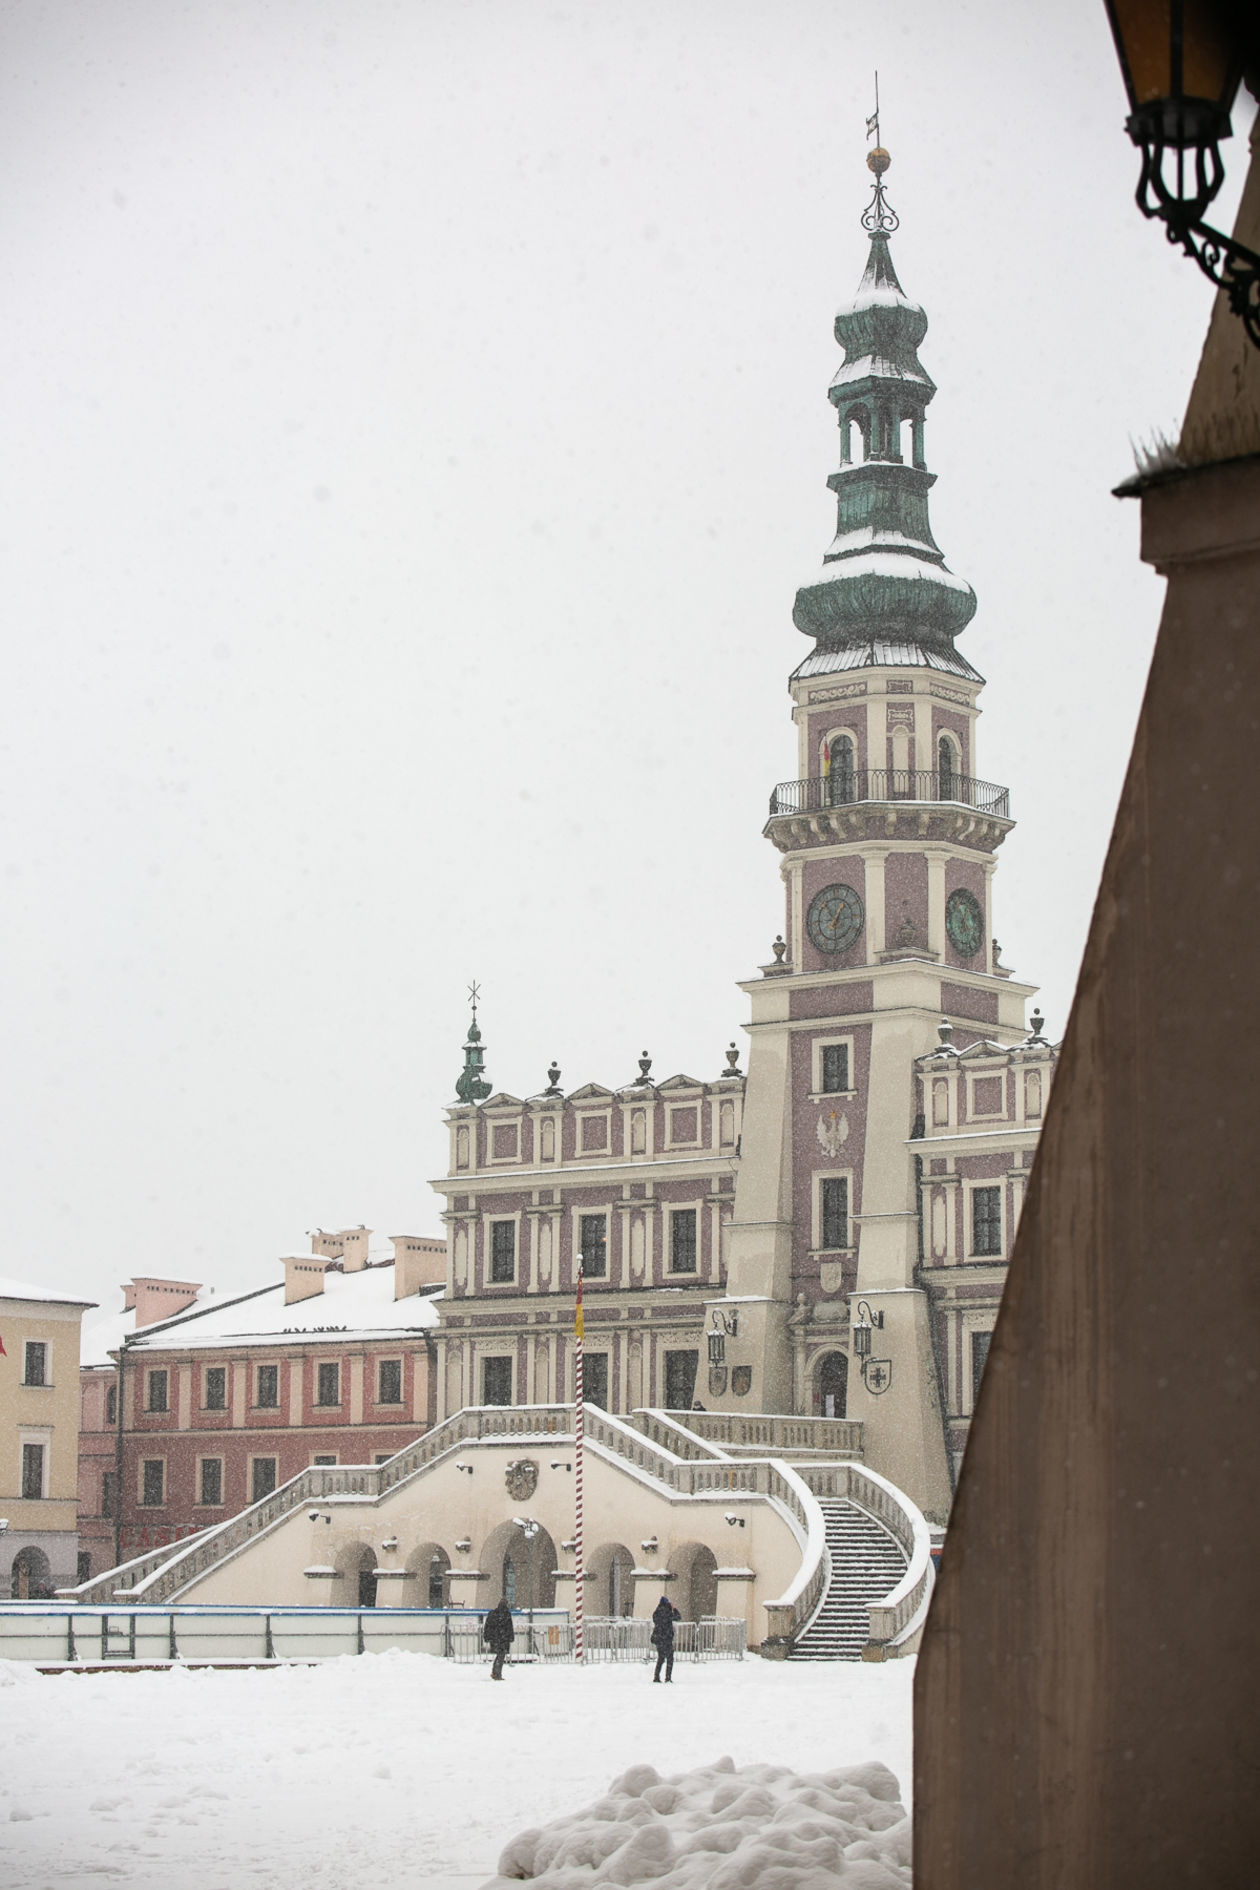  Zamość pod śniegiem (zdjęcie 1) - Autor: Kazimierz Chmiel